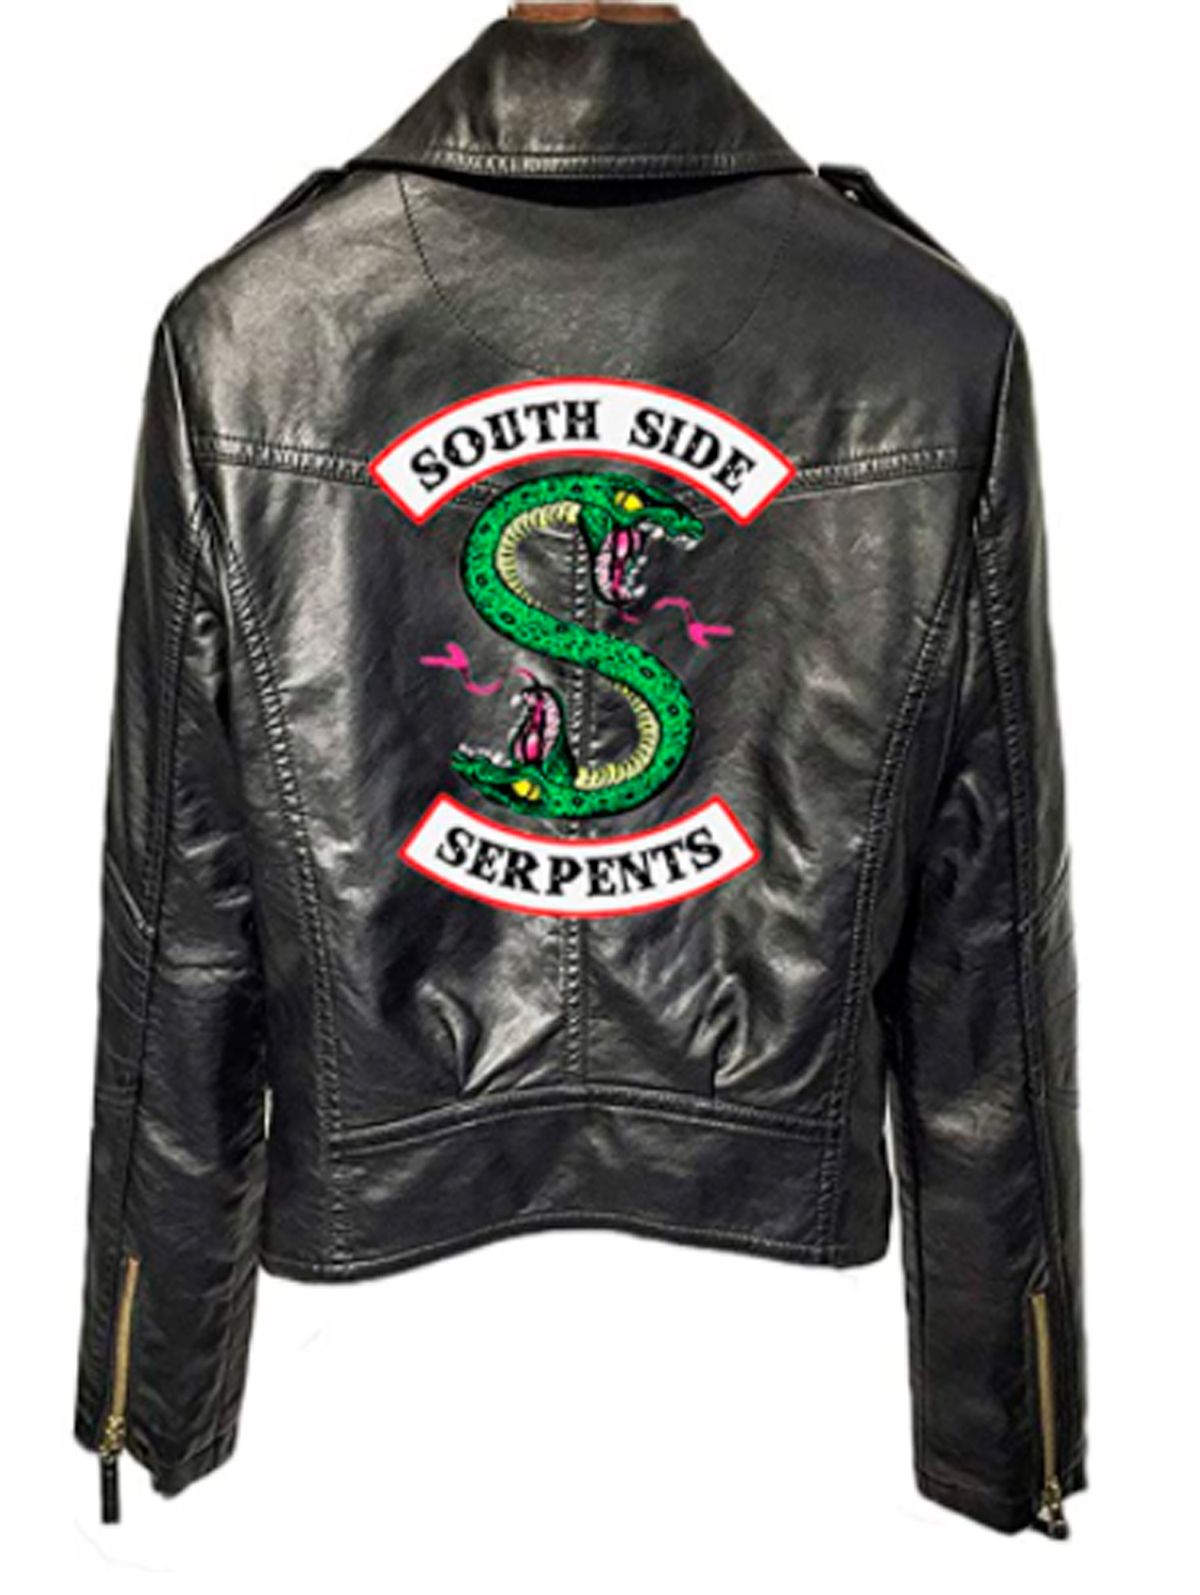 chaqueta Las Serpientes Riverdale, por de 40 euros